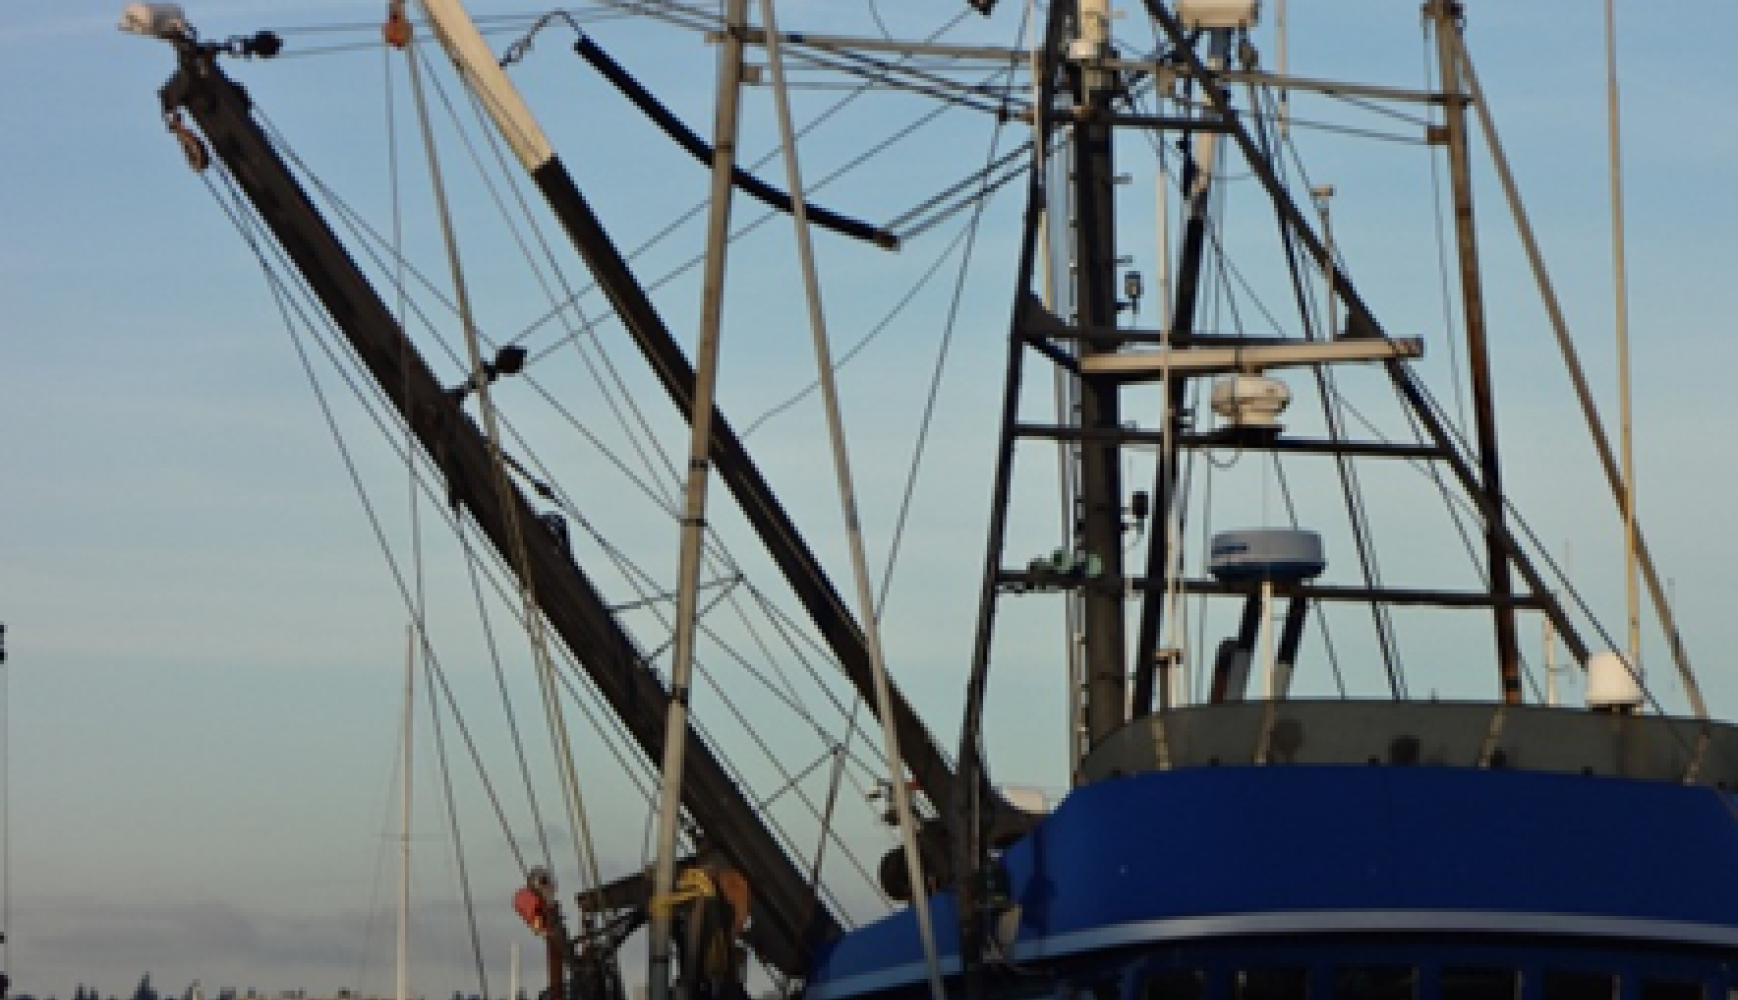 Fishing Vessel, MTNW, LCI-80, LCI, Trawling, Line Counter, Payout, Sheave